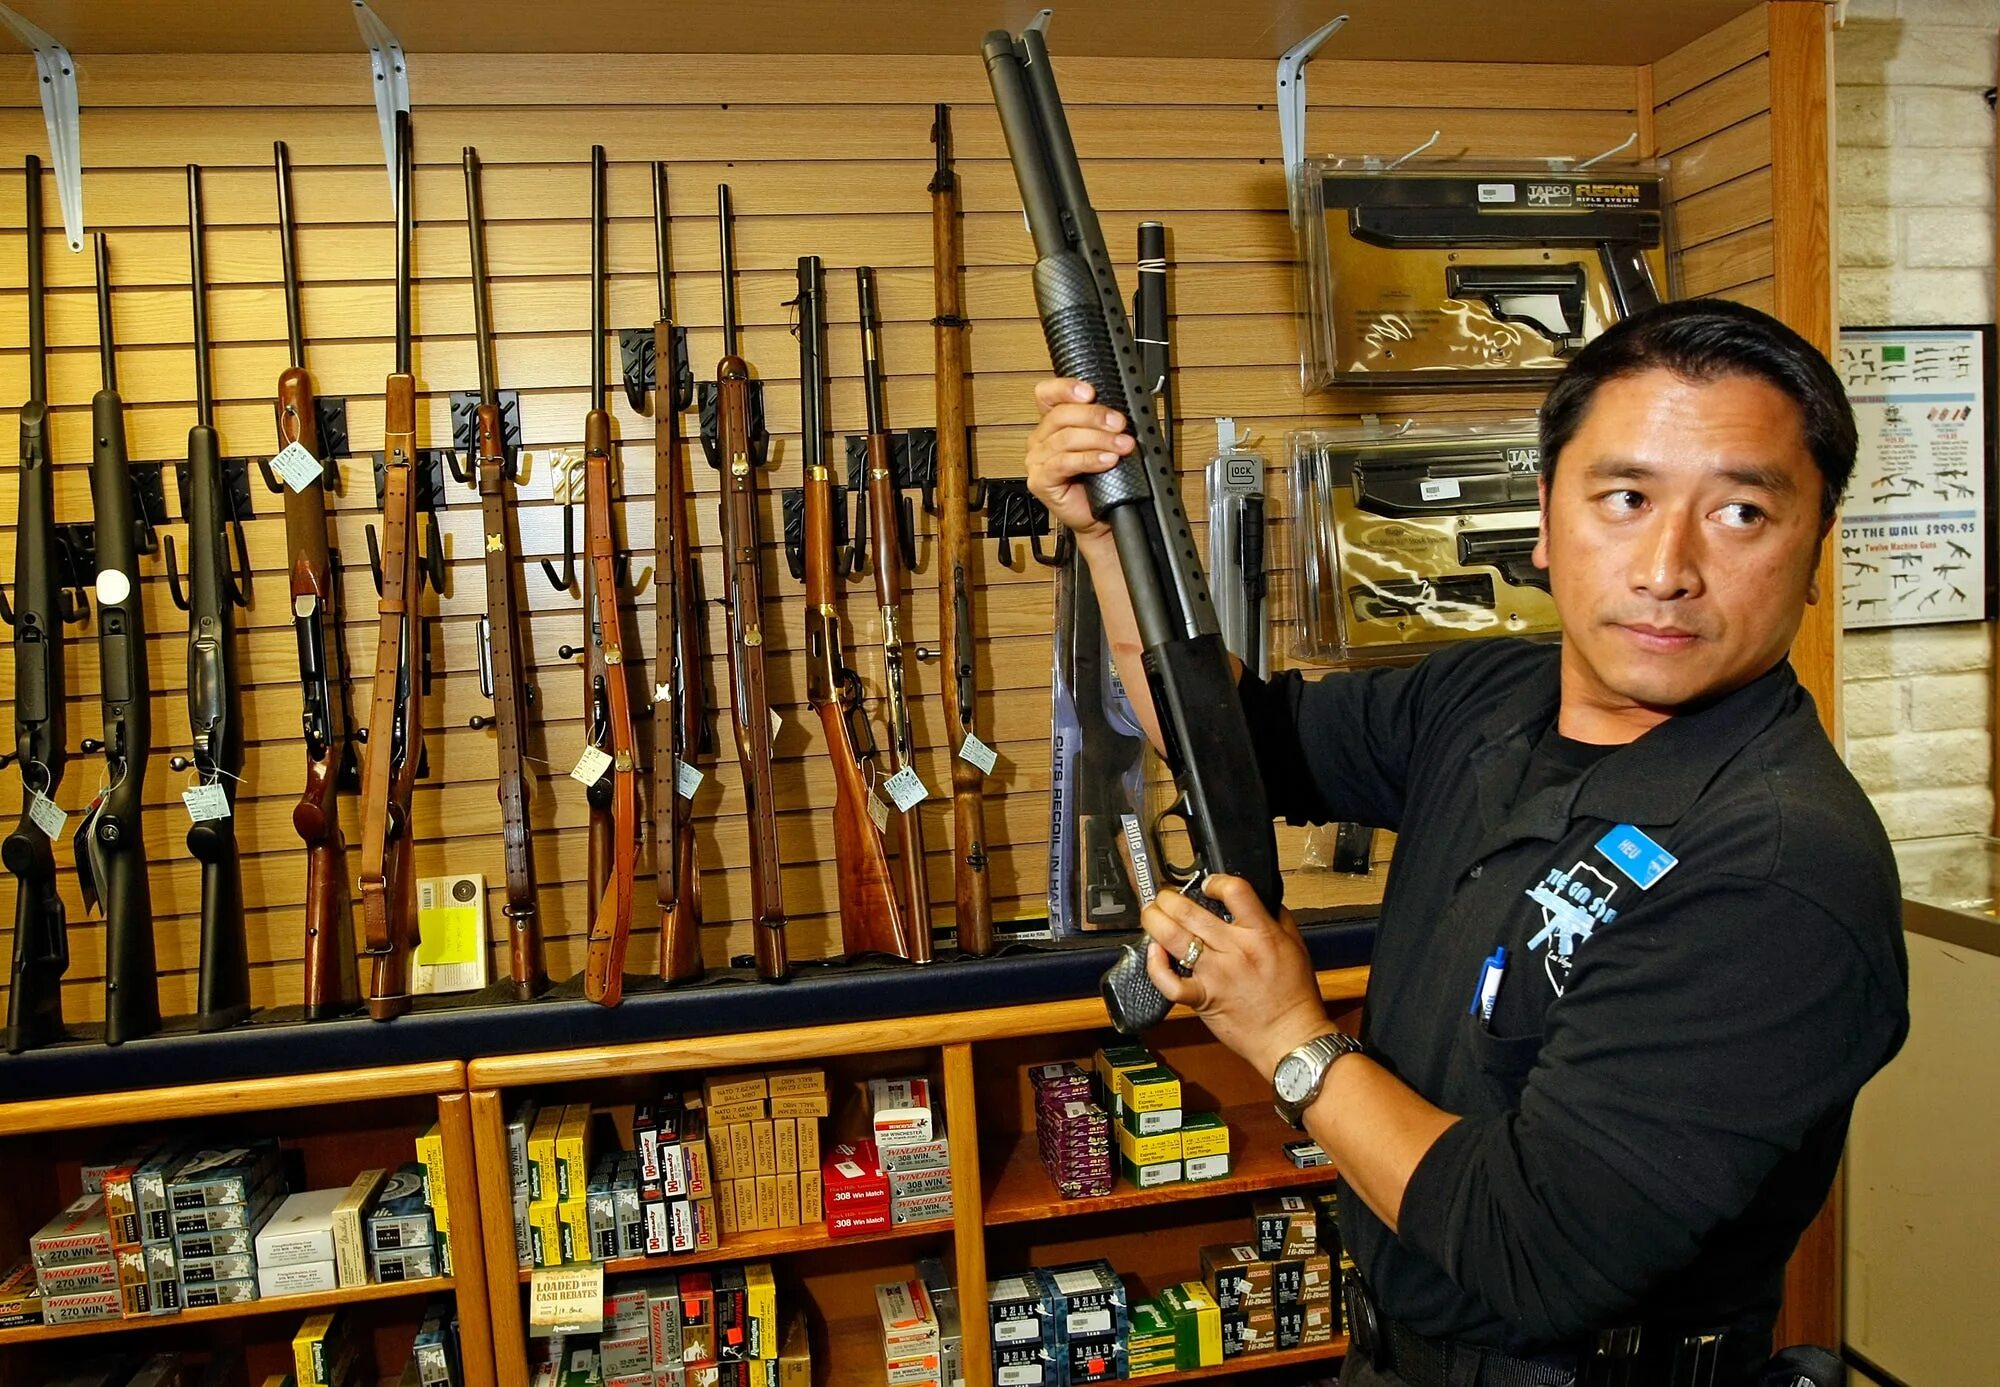 Оружейный магазин в Америке. Магазин оружия в США. Американские оружейные магазины. Человек с огнестрельным оружием. Japan gun